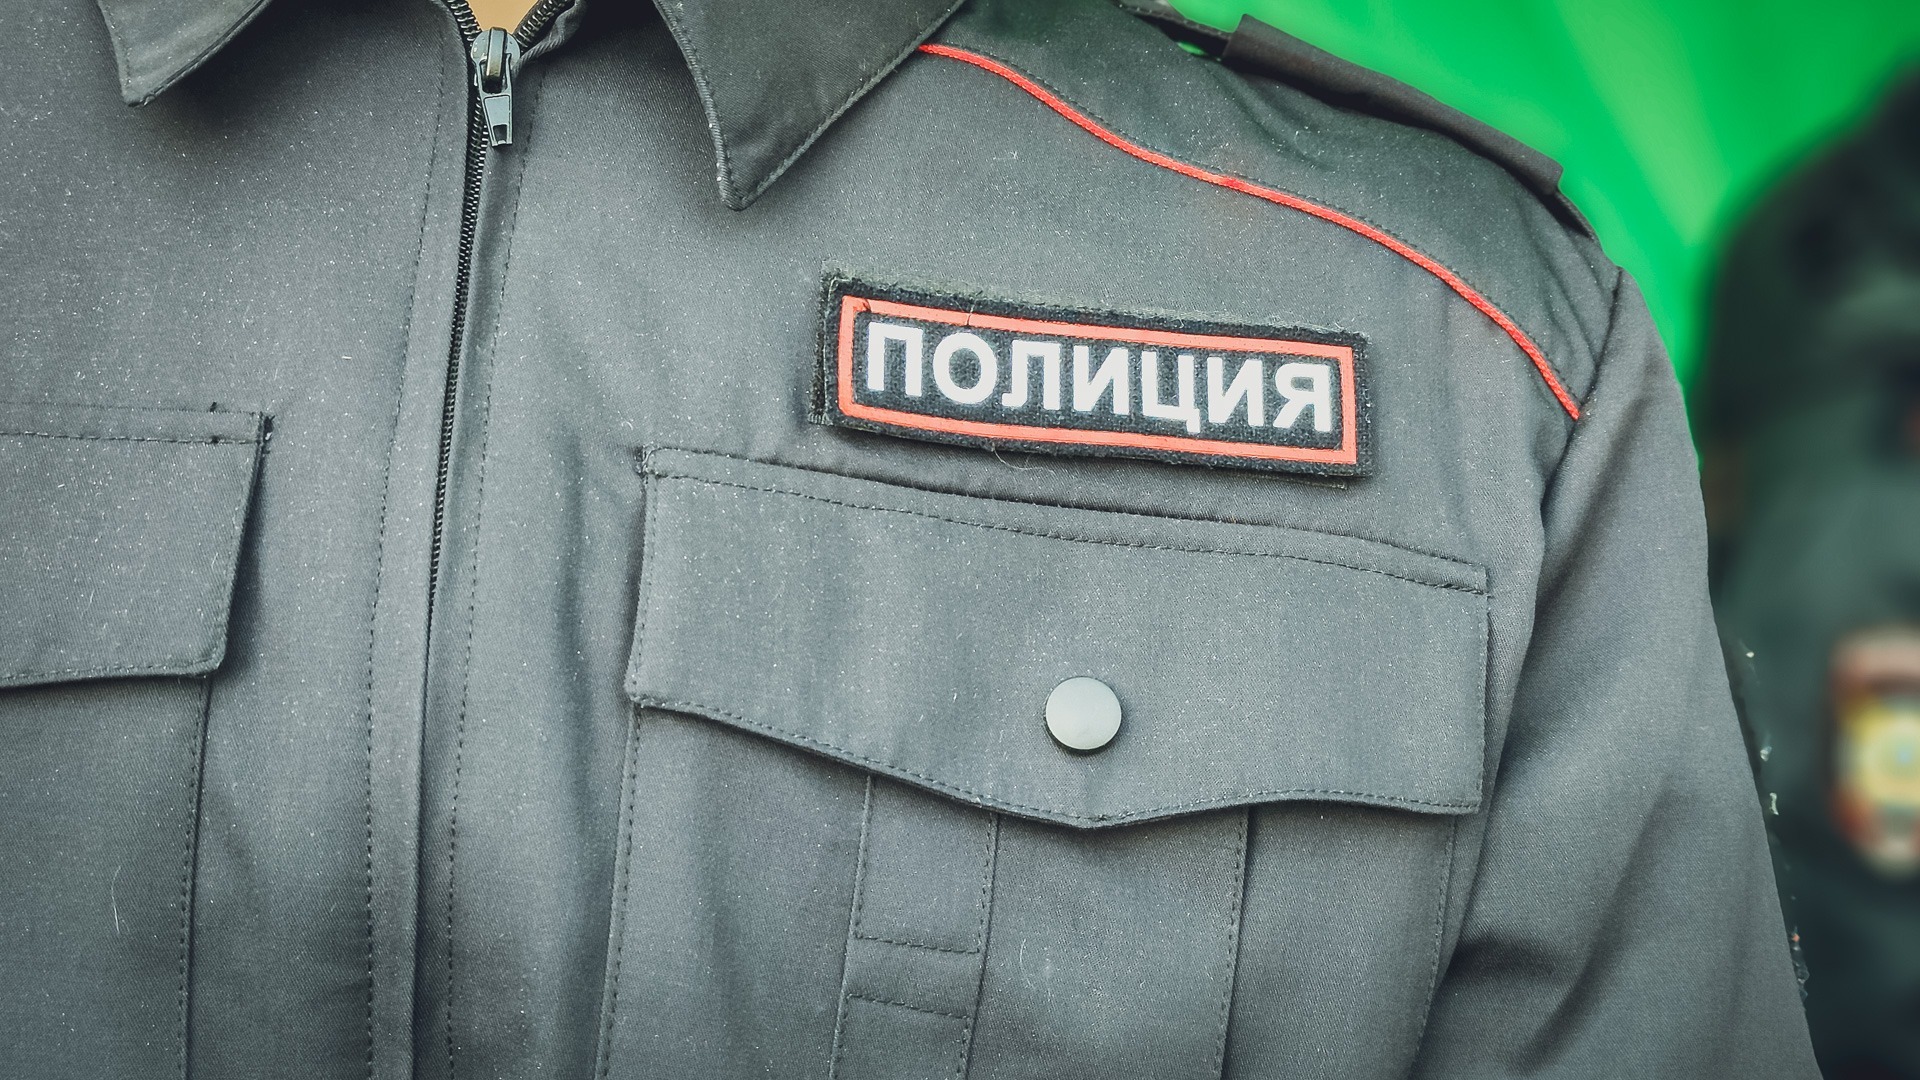 В Красноярске обокрали цех пошива для участников СВО